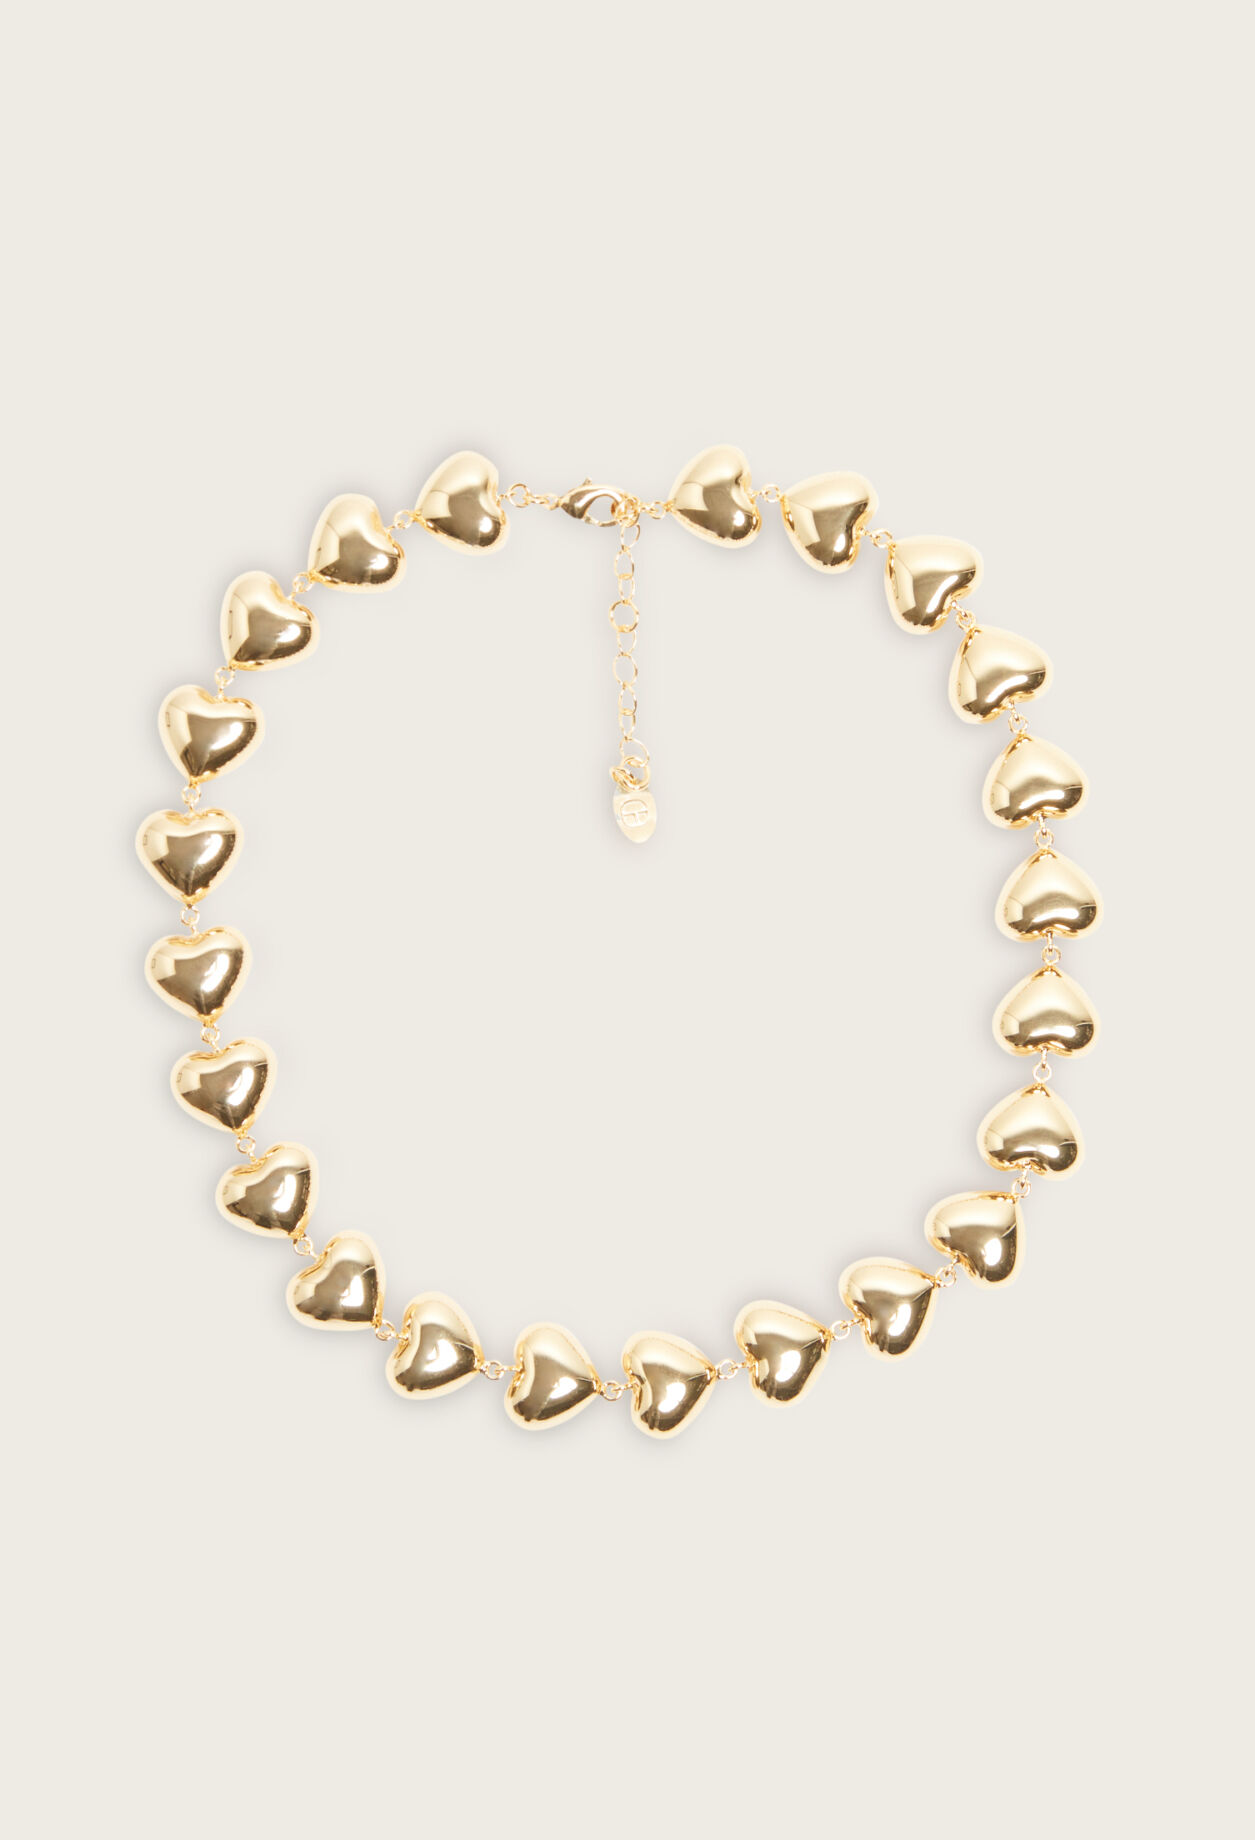 Golden brass heart necklace